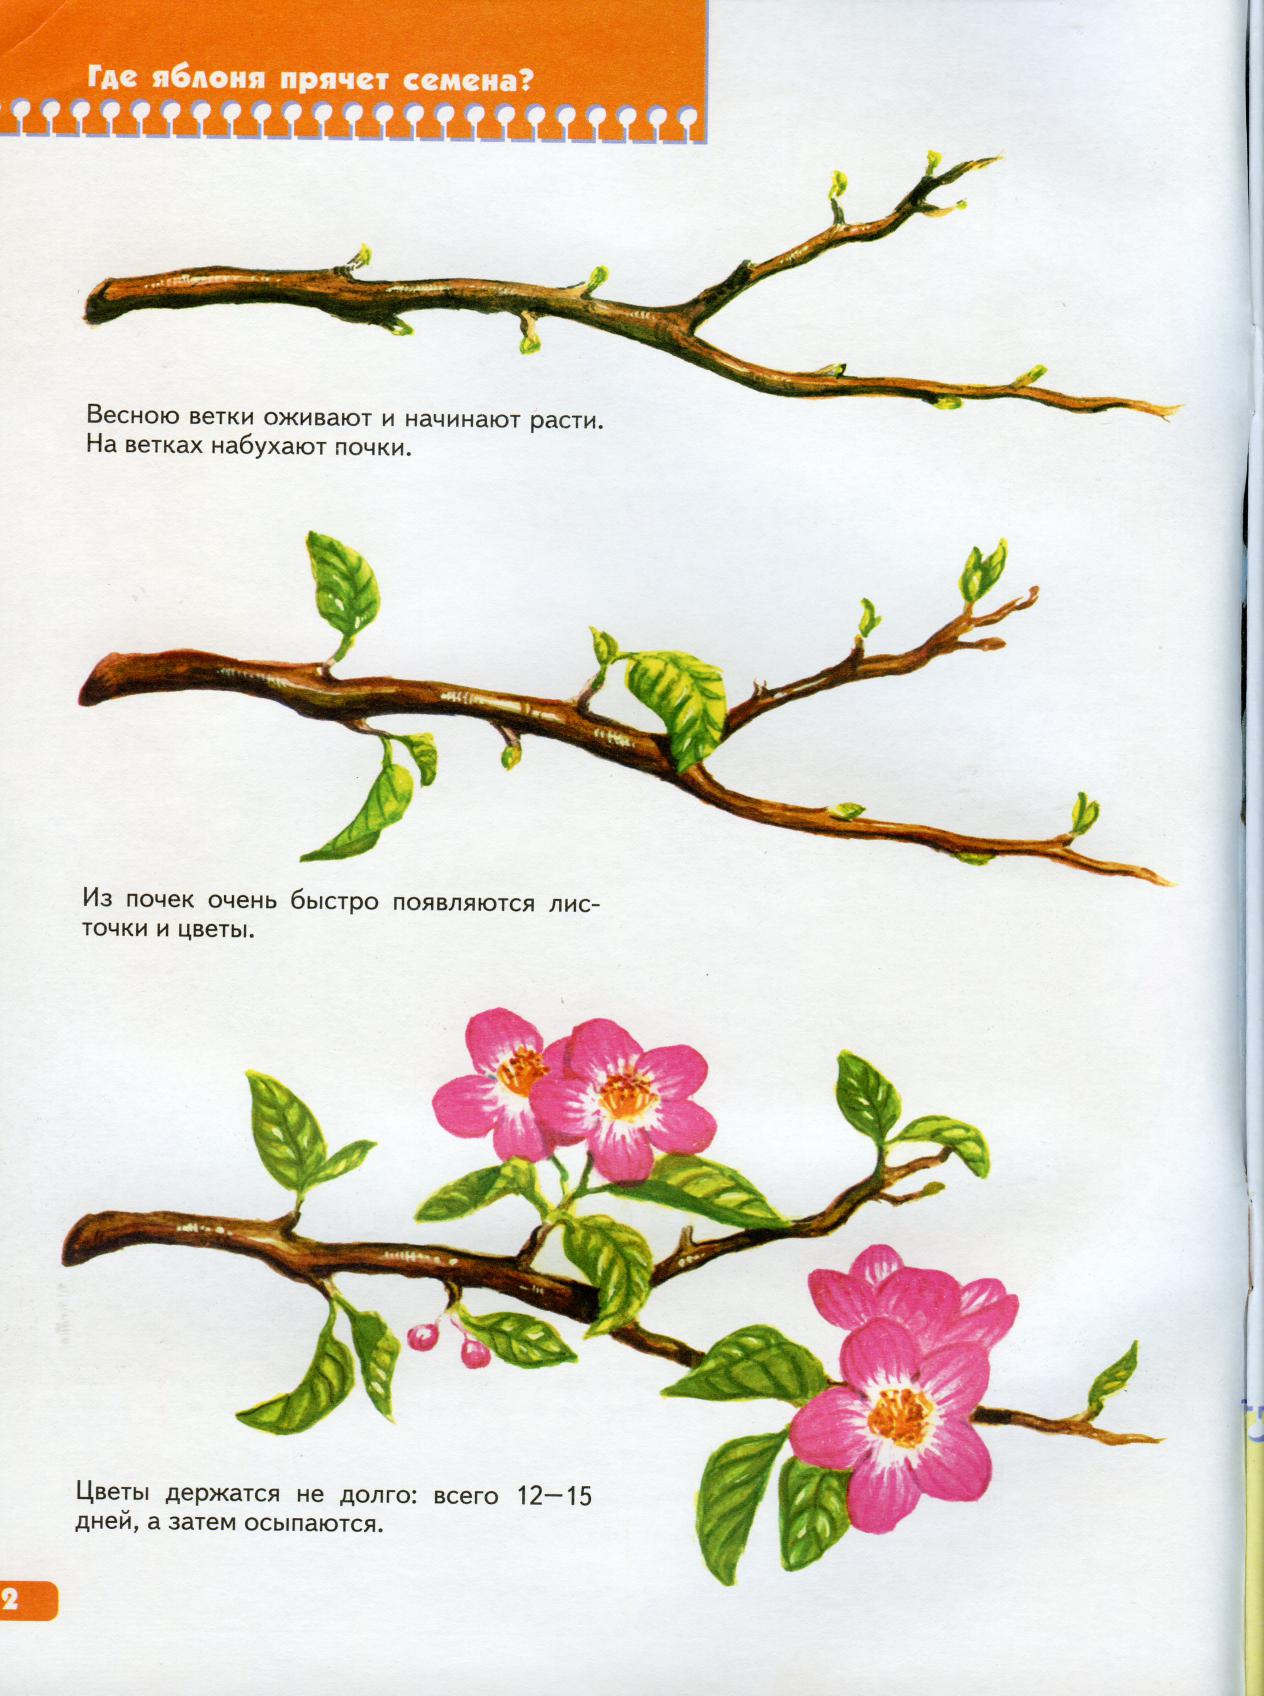 Этапы цветения яблони